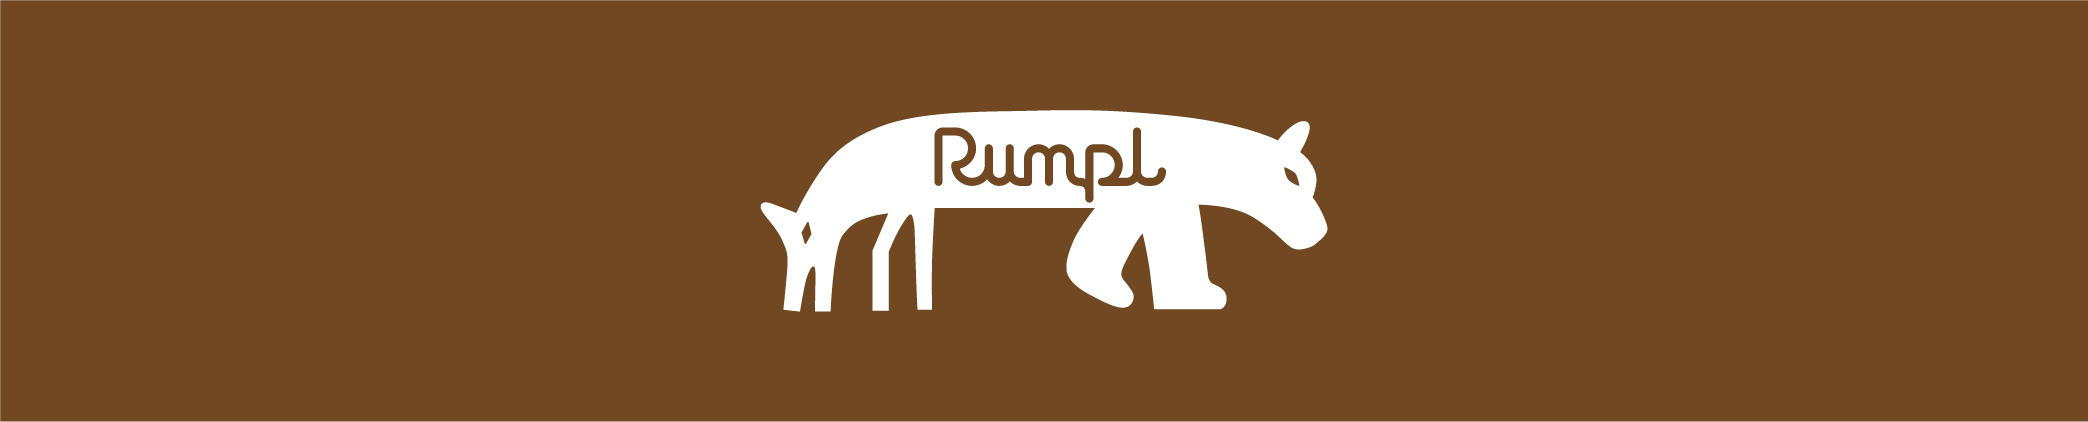 Rumpl Westerlind logo lockup